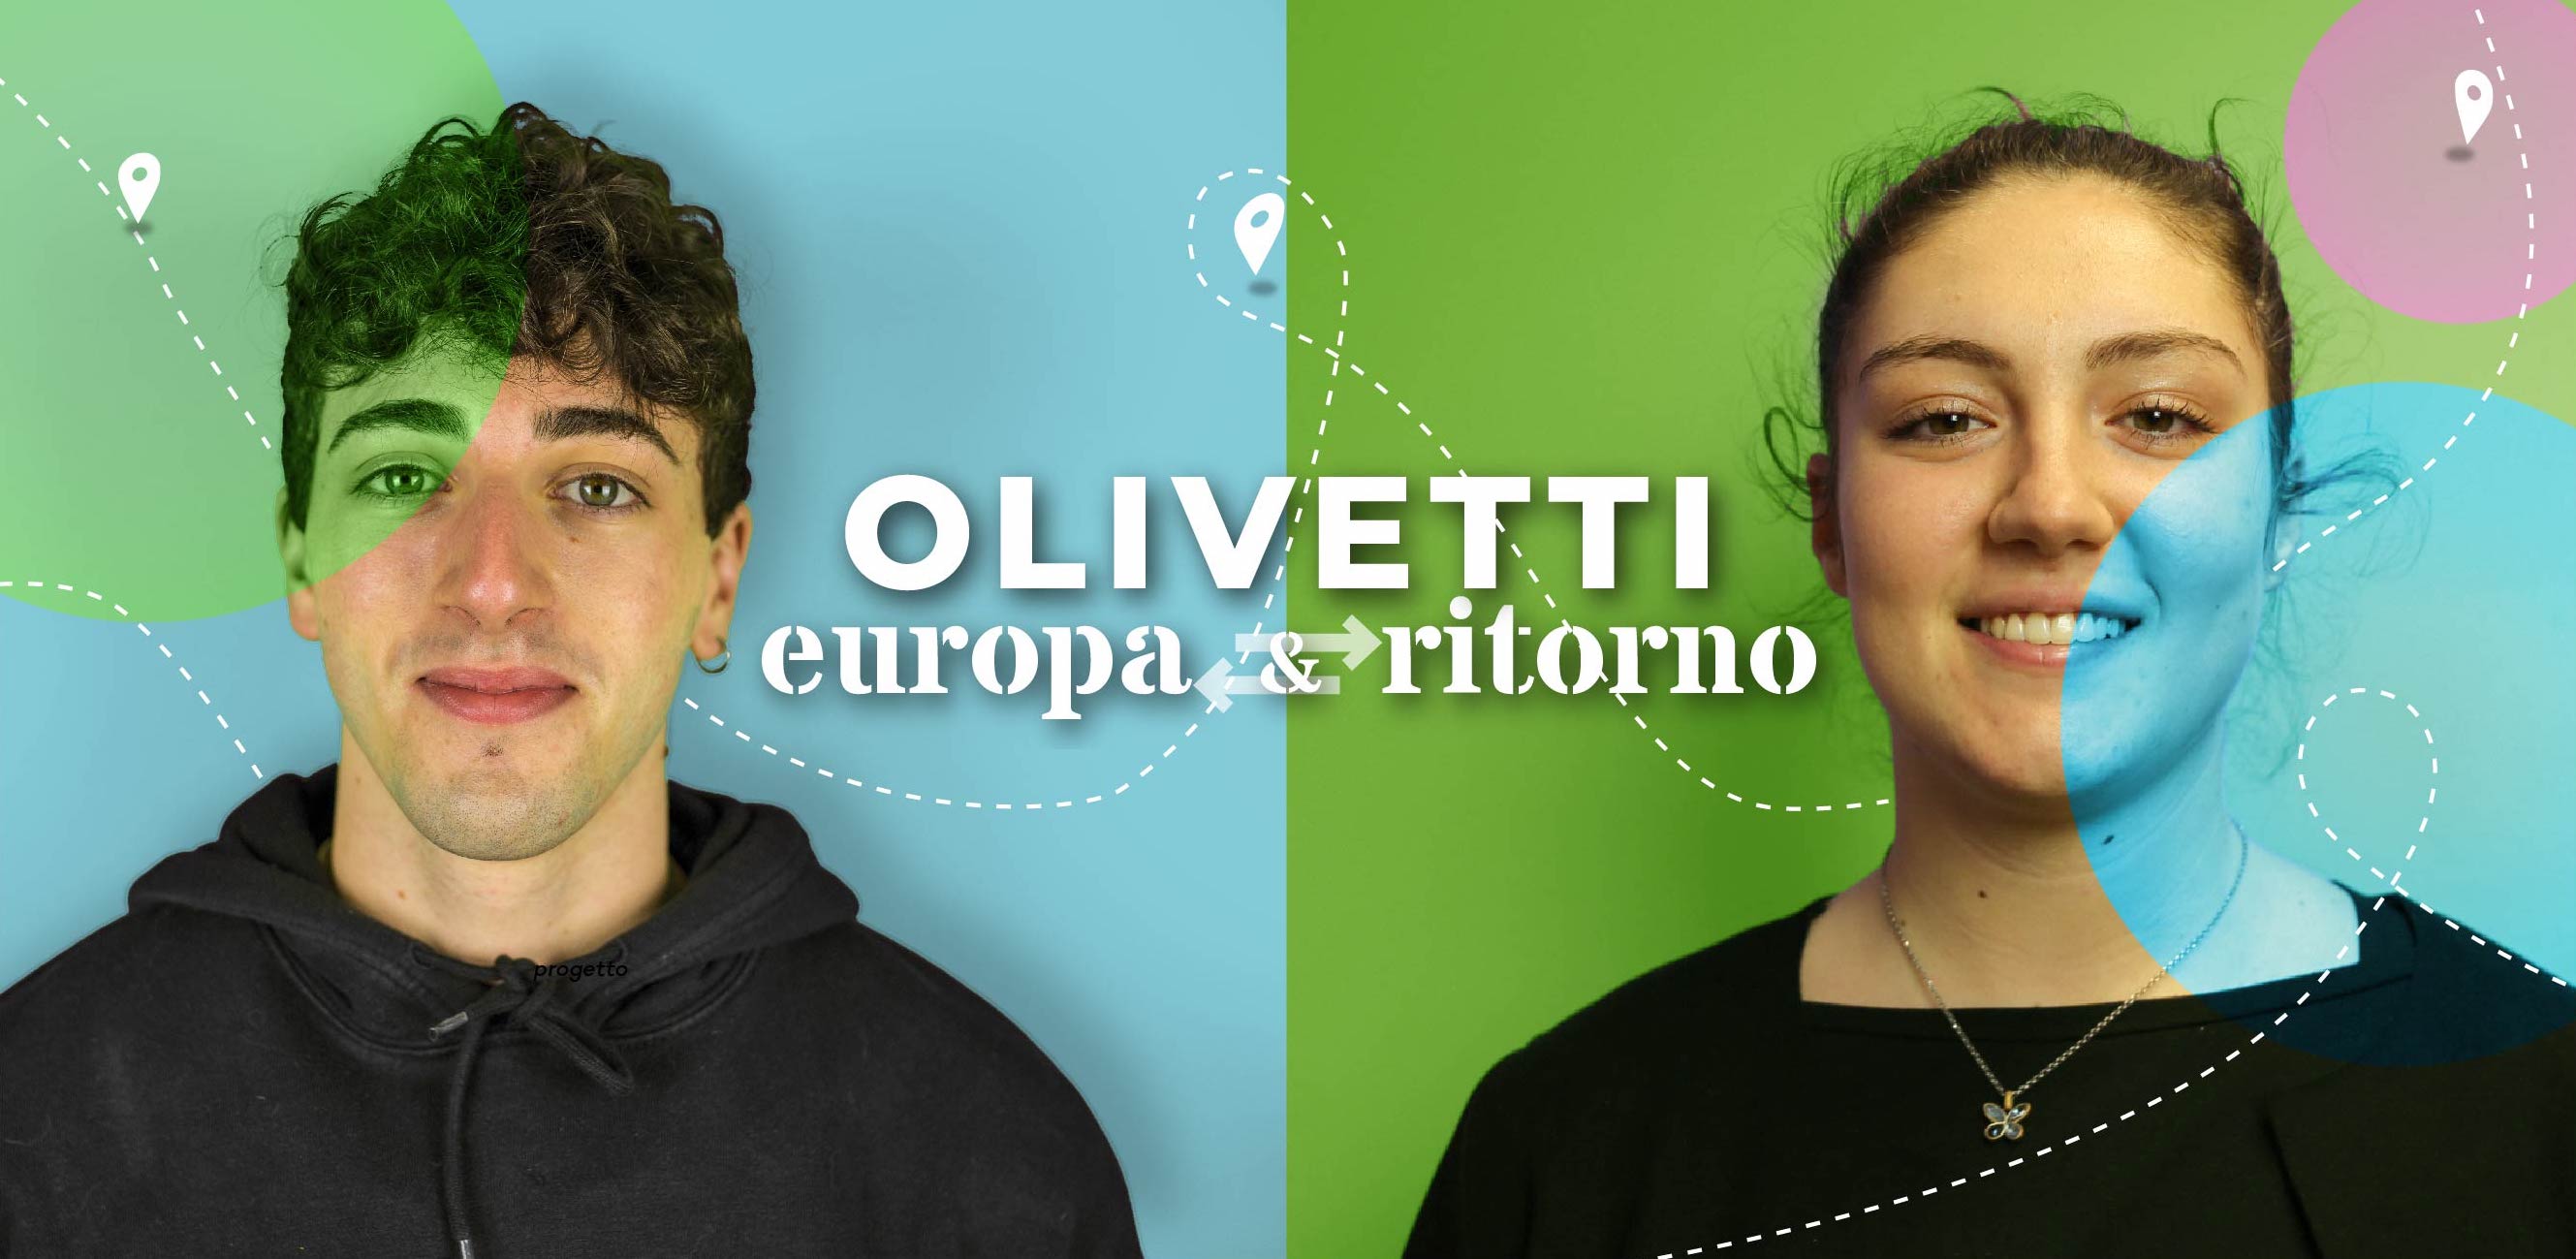 Olivetti Europa e Ritorno-I.I.S. OLIVETTI